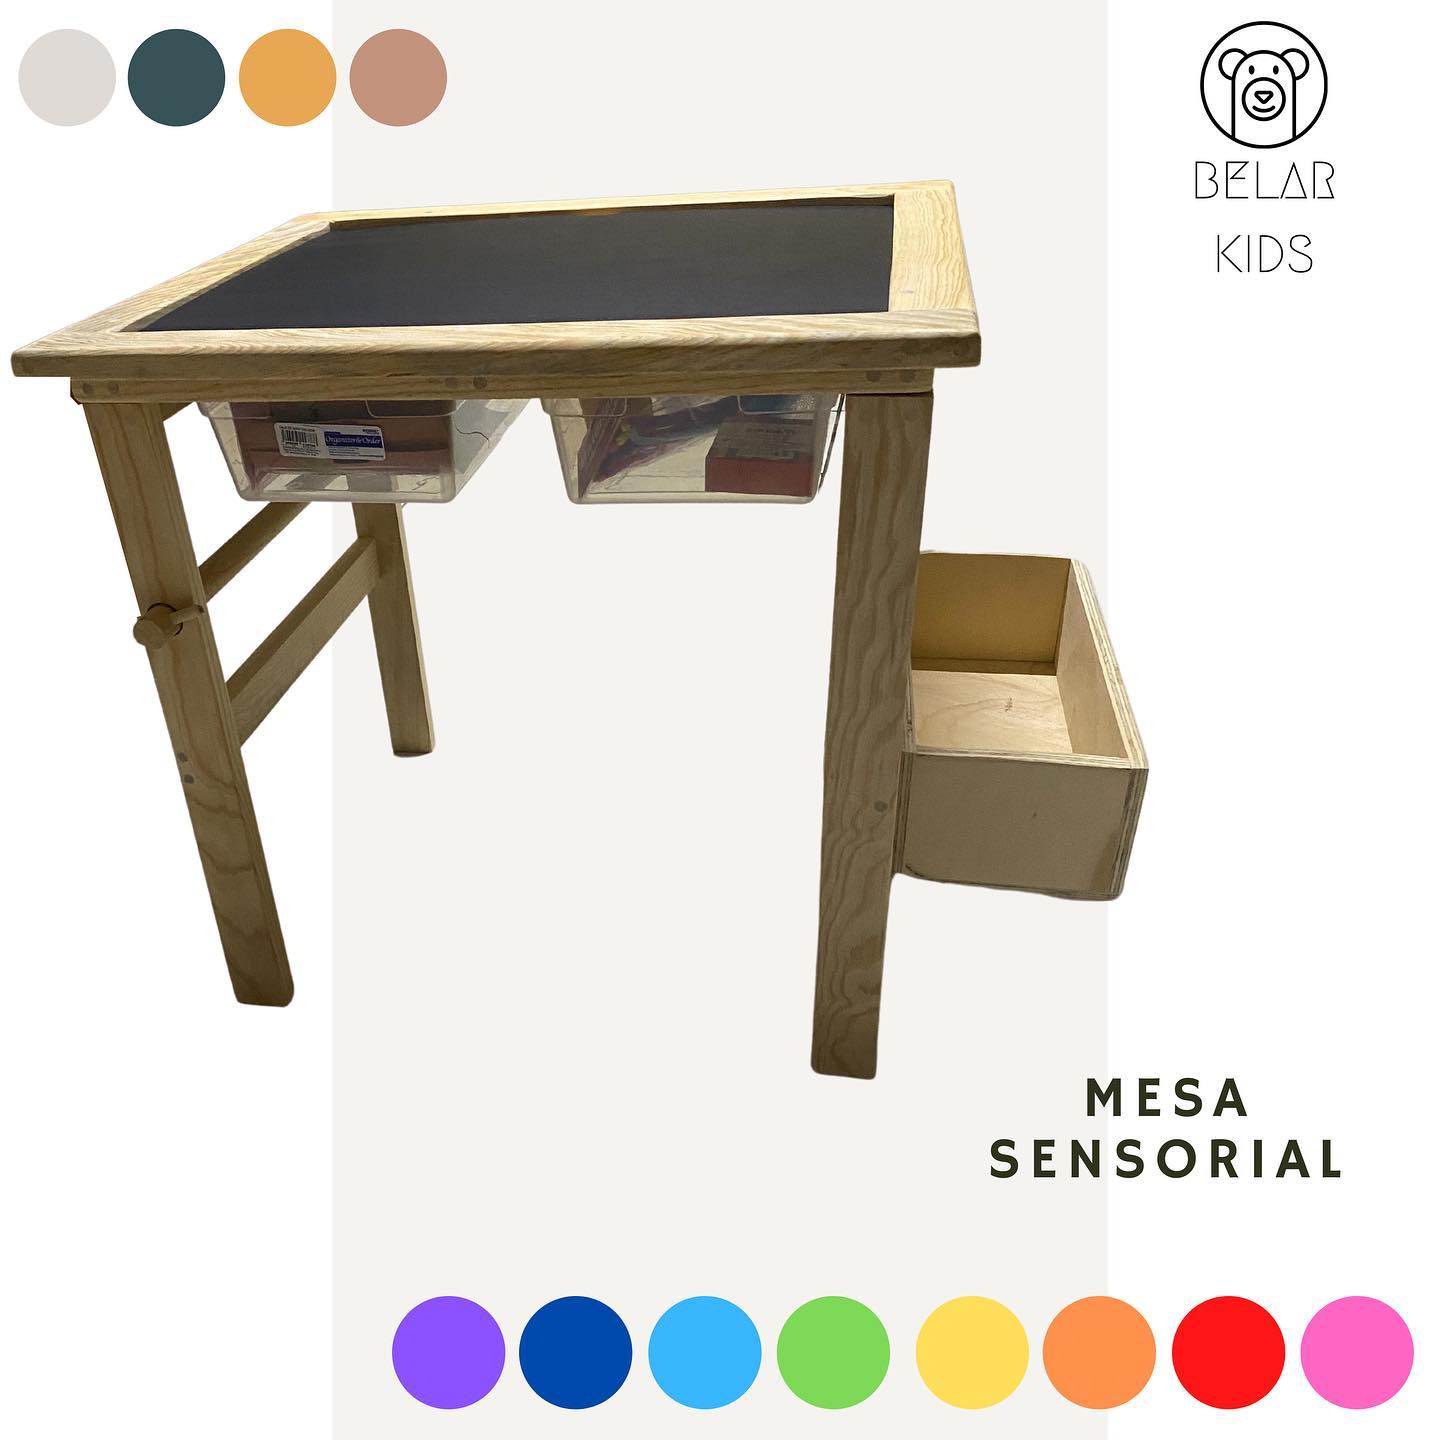 MyM Fibrofácil  Mayoristas on Instagram: Pero antes, ¿Qué es una Mesa  Sensorial? Una mesa sensorial Montessori es utilizada para desarrollar la  estimulación sensorial en los niños.🧠 Nuestro modelo consiste en una